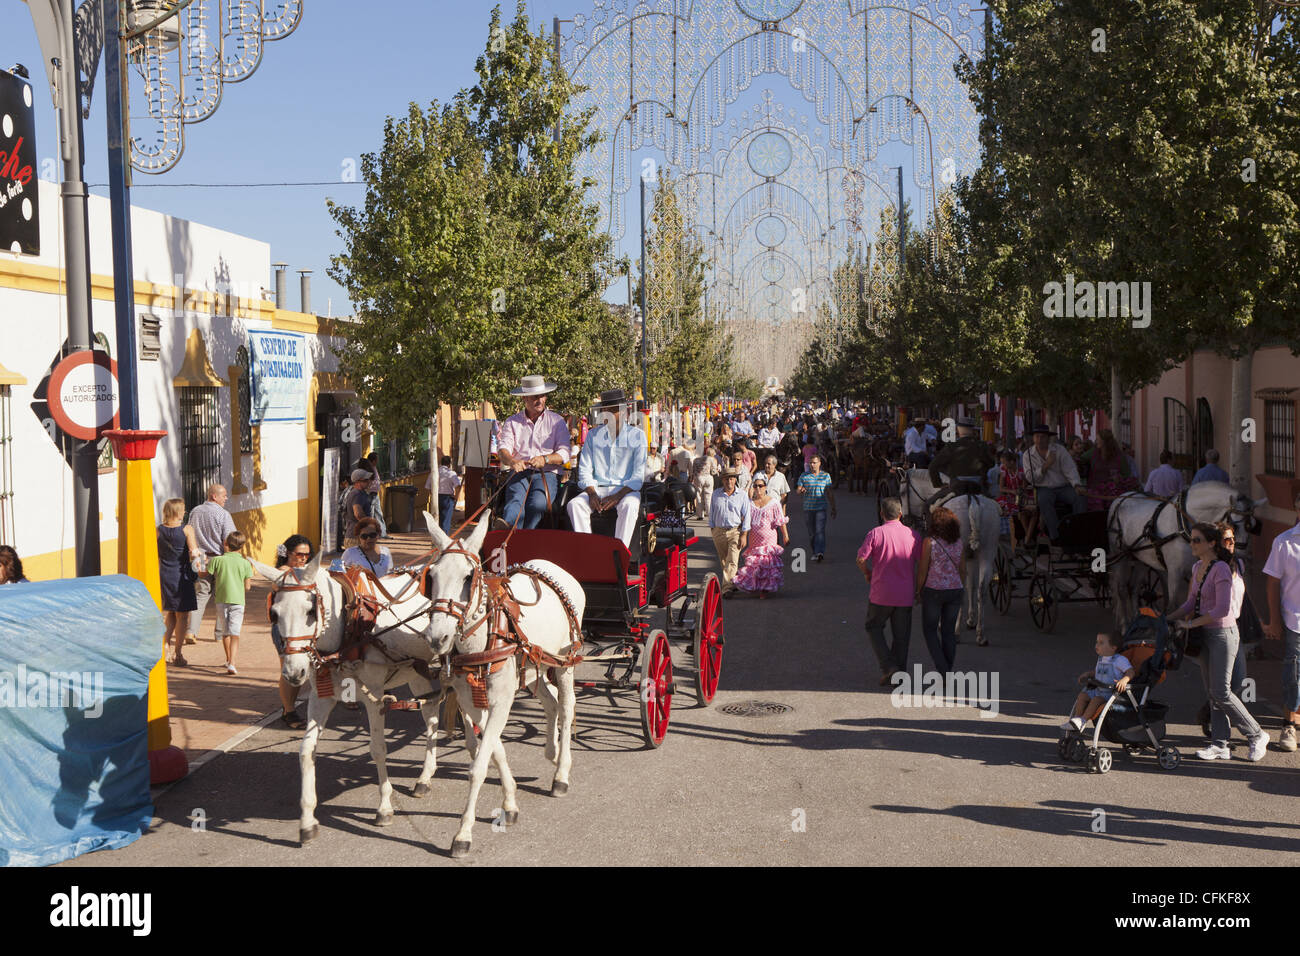 Muled Pferdekutsche, Fahrer und einheimische gekleidet in traditionellen Kostümen in Fuengirola Fair Andalusien Spanien Stockfoto